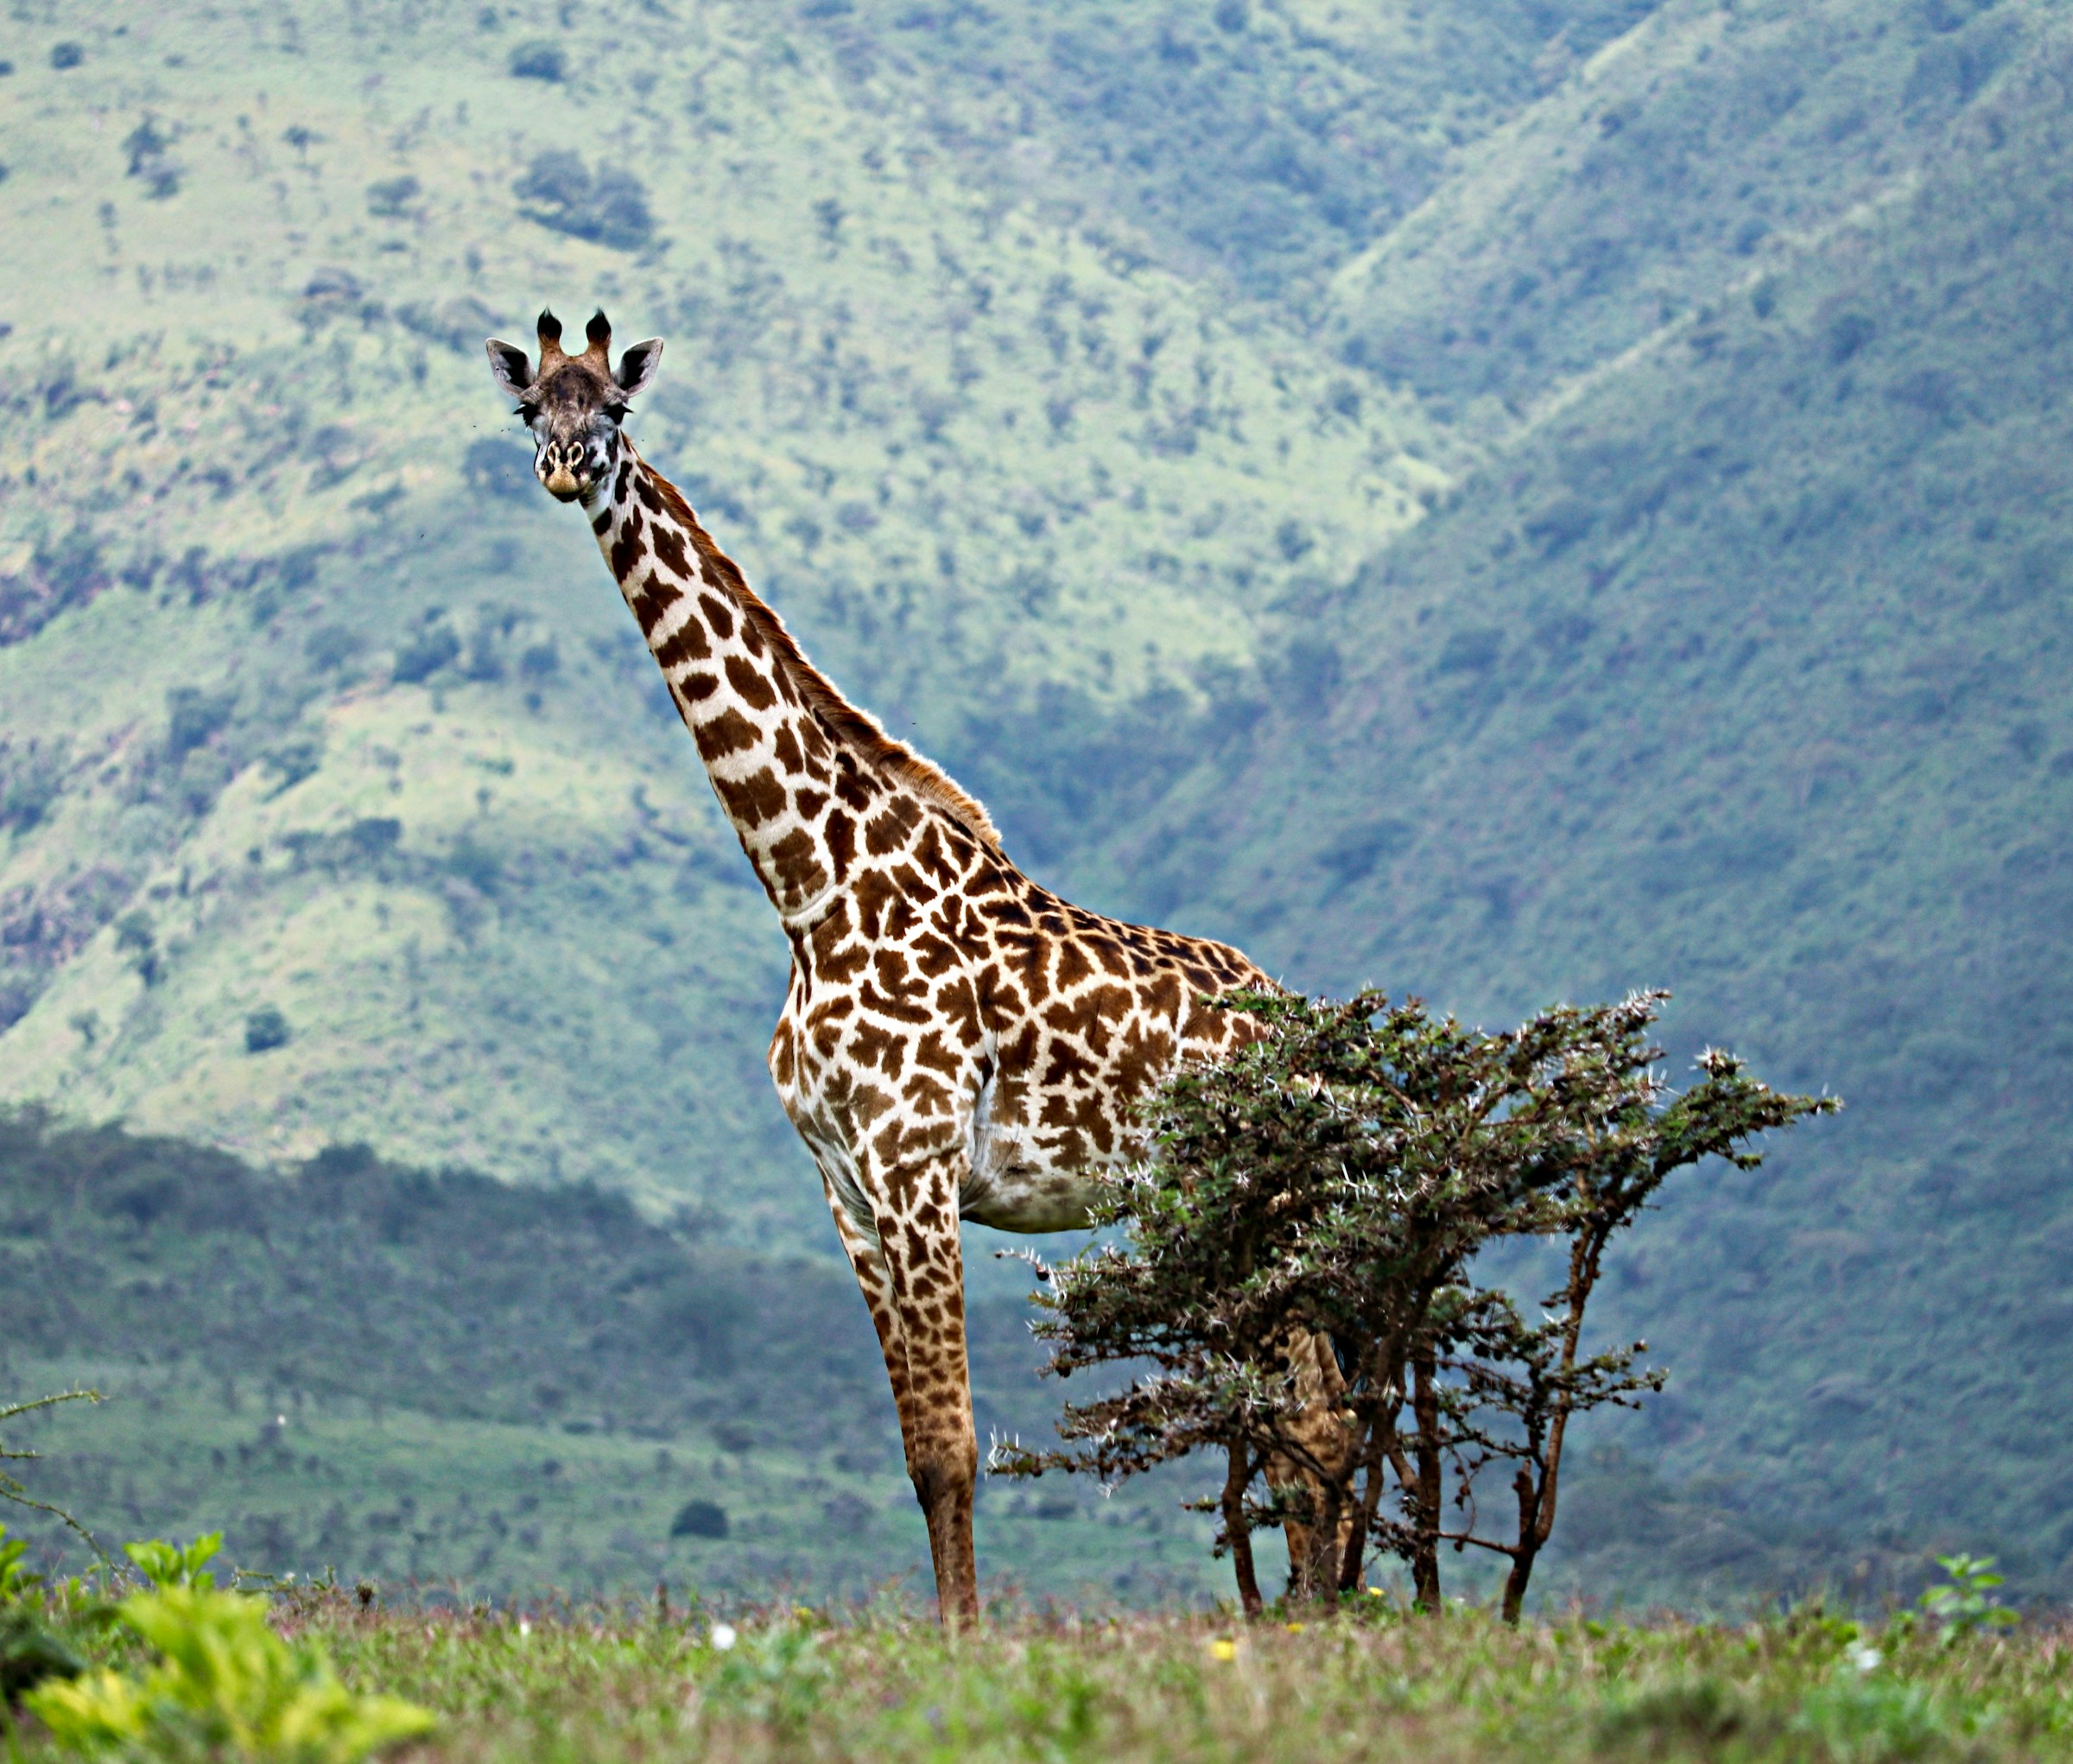 tanzania wildlife safari in Tanzania